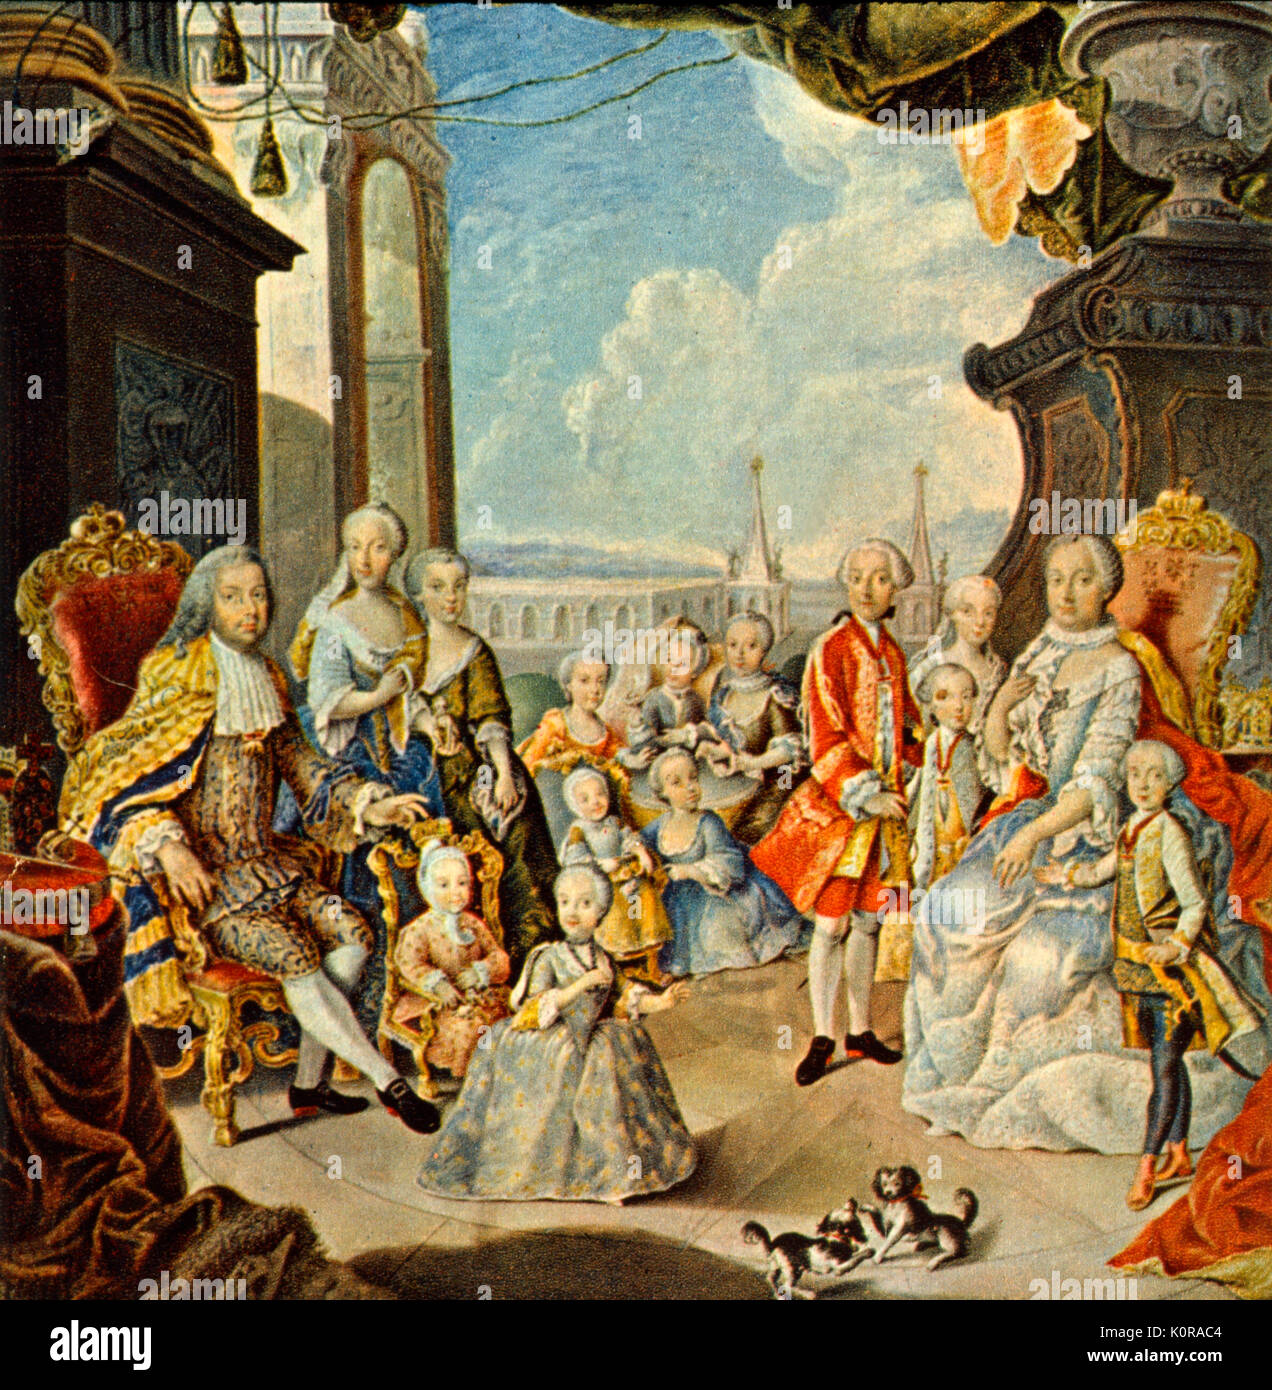 Maria Teresa Imperatrice d'Austria con la sua consorte e famiglia. (Il suo figlio Giuseppe è in piedi alla sua sinistra) Dopo Martin van Meytens, 1760 Foto Stock